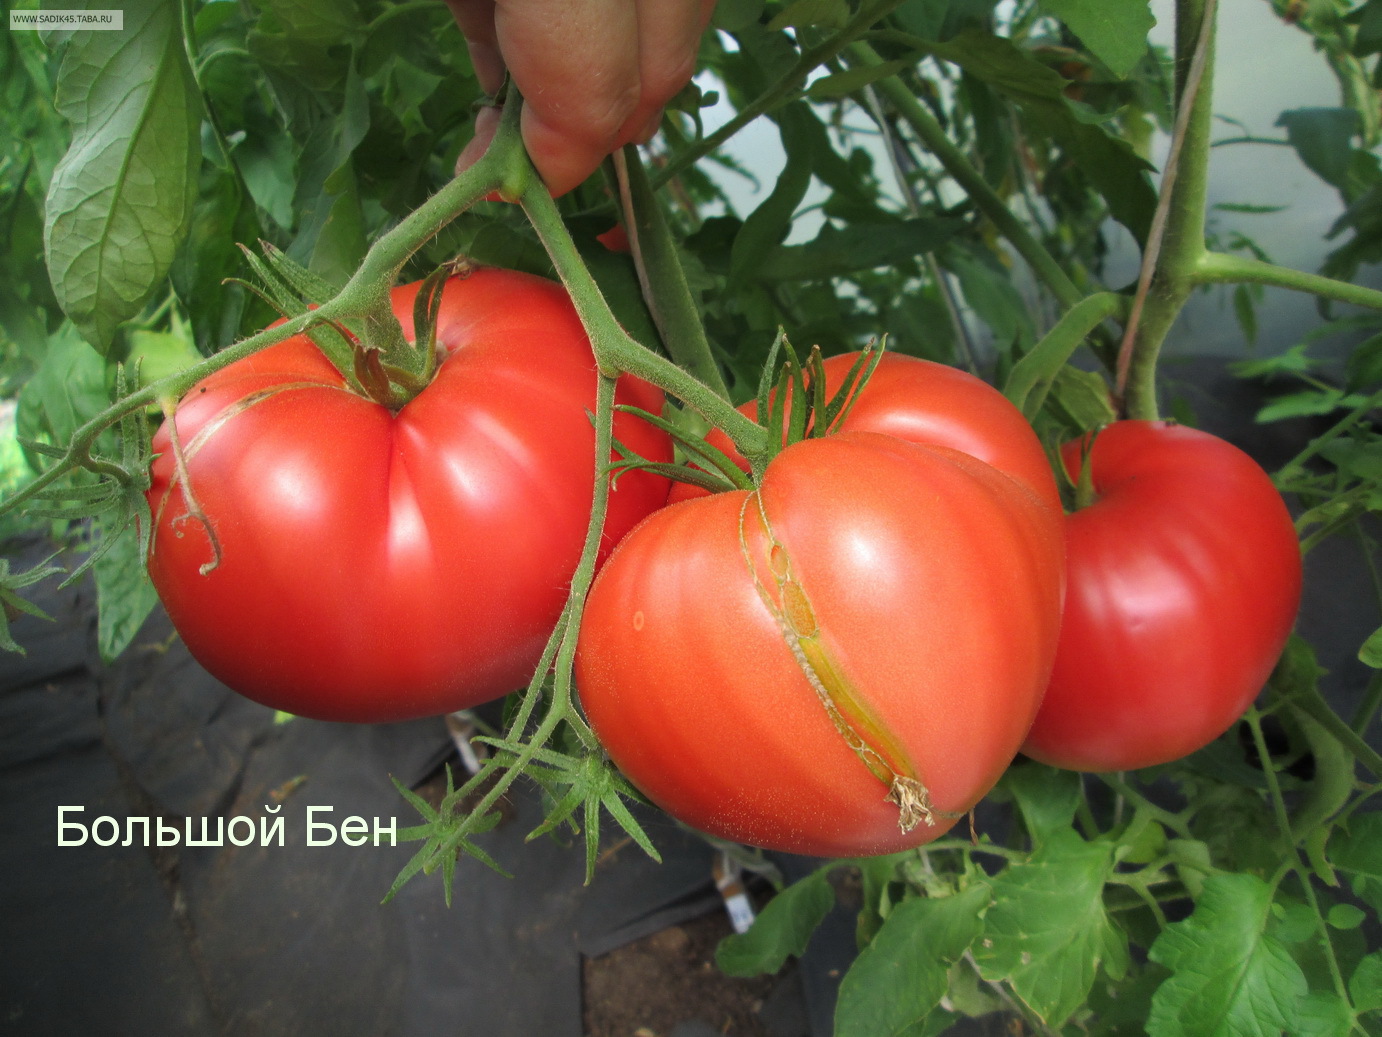 Видео: Самые вкусные сорта томатов, обзор